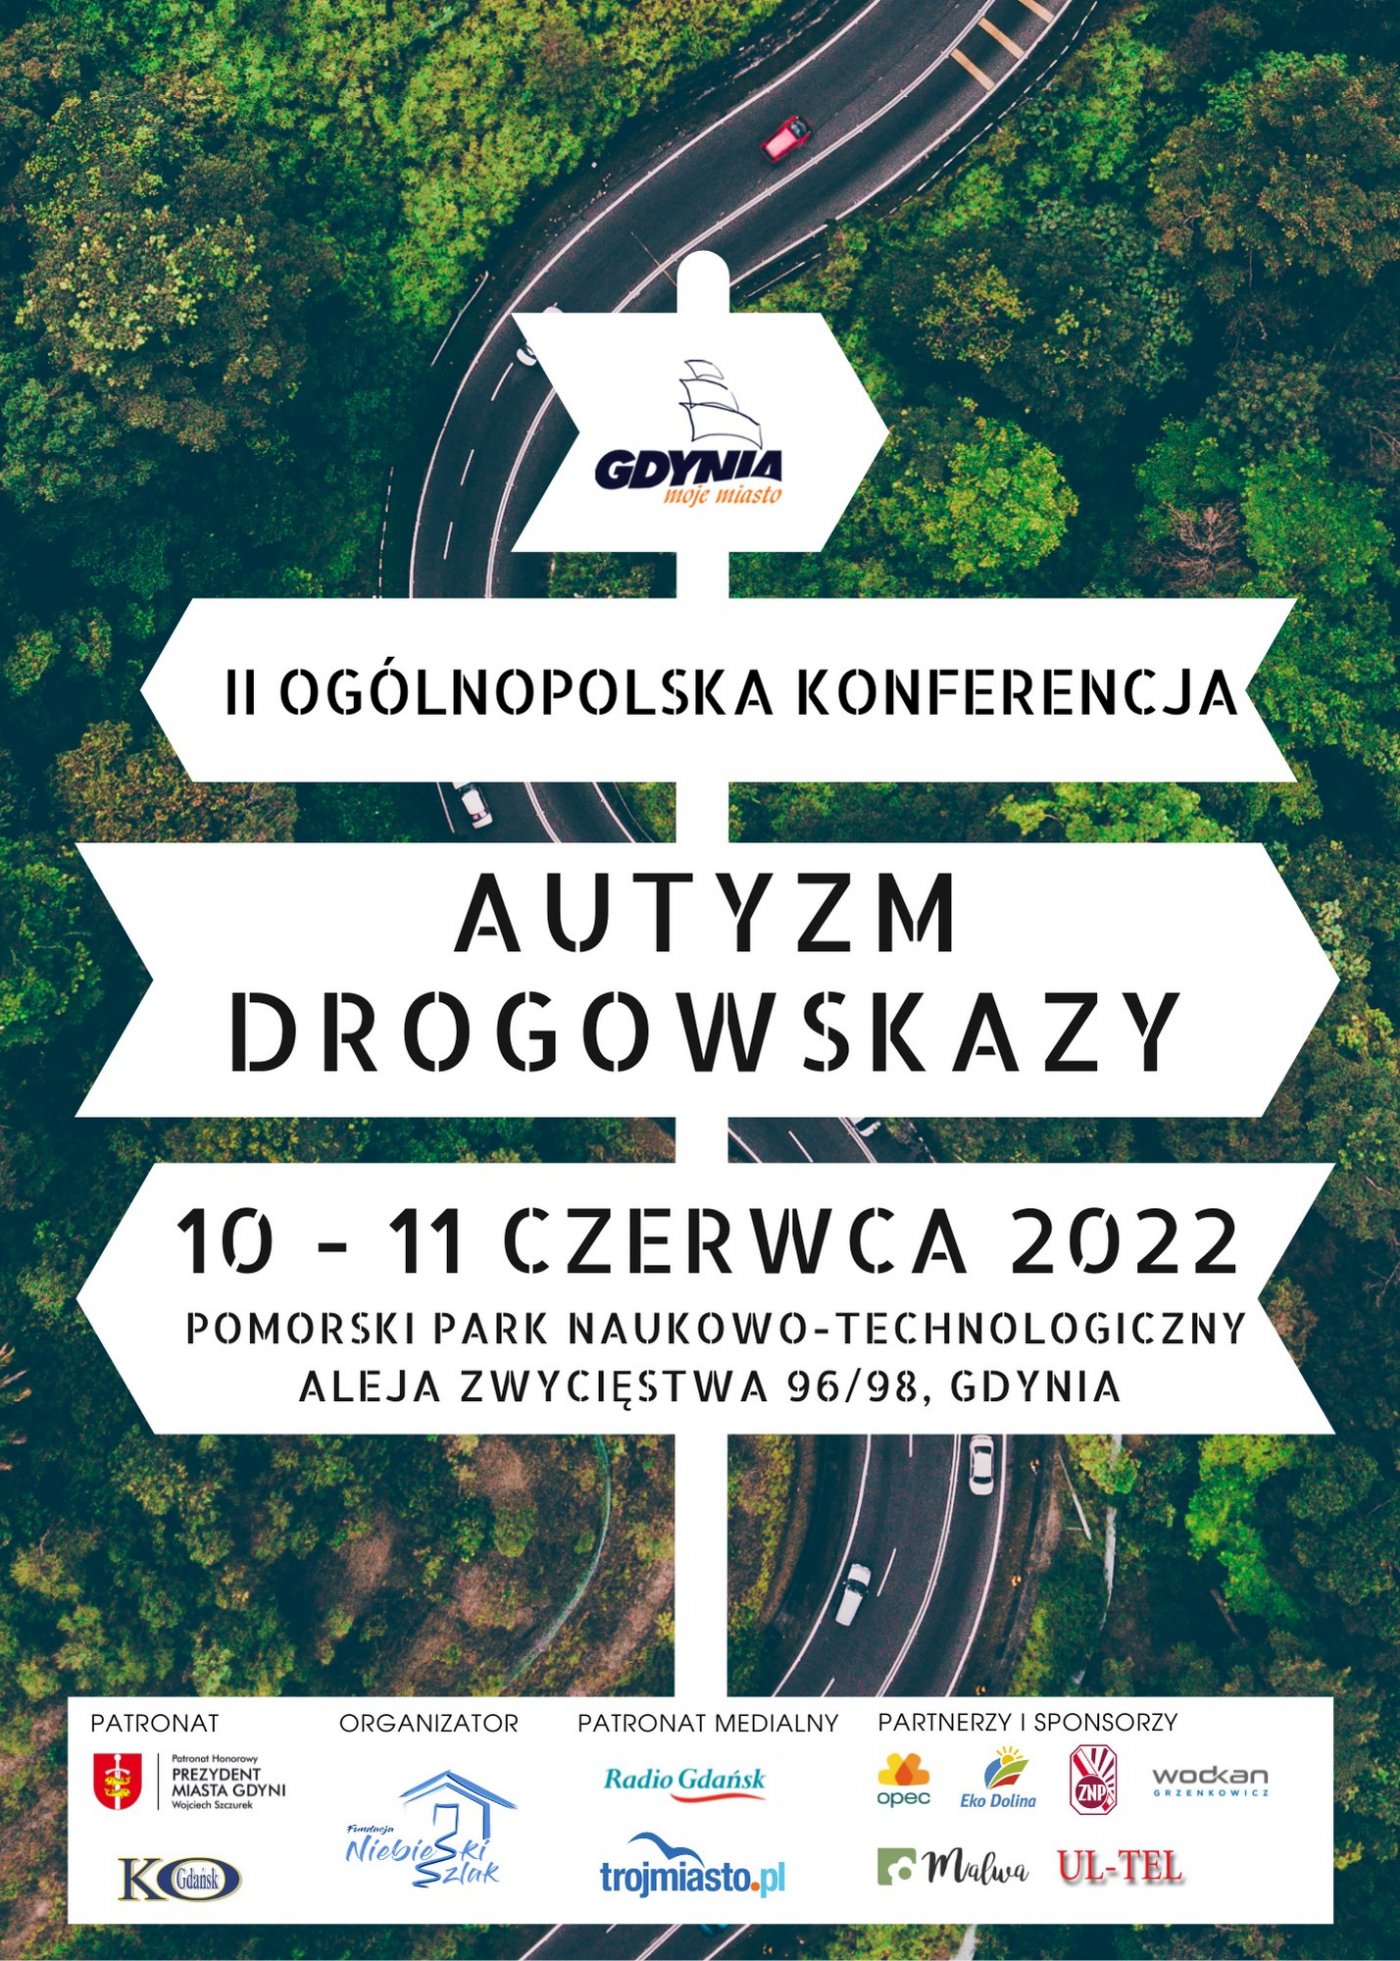 Plakat promujący wydarzenie AUTYZM DROGOWSKAZY 10-11 CZERWCA 2022 ROKU